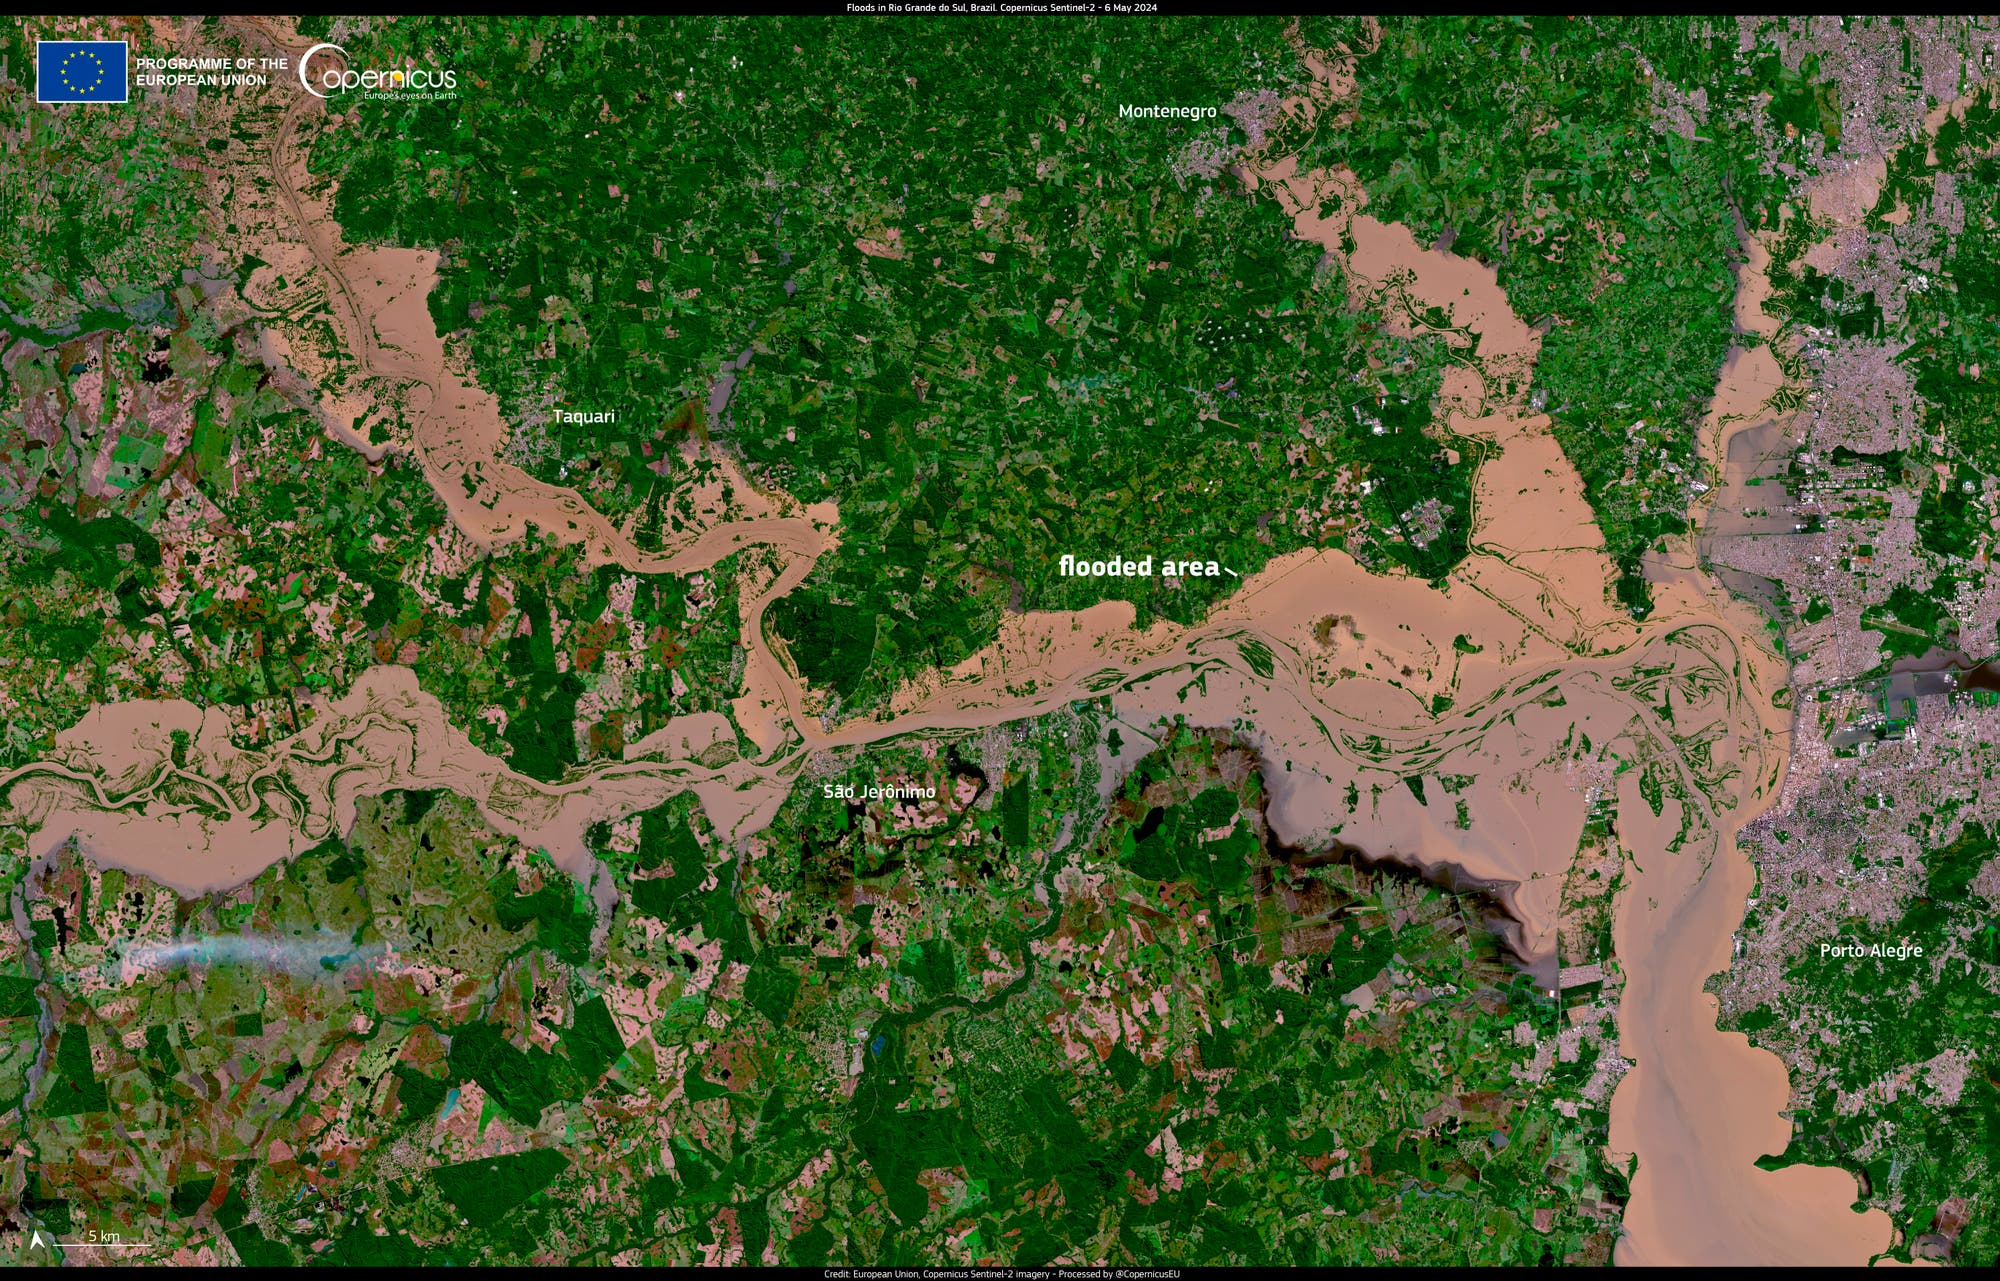 Satellitenbild von Rio Grande do Sul vom 6. Mai 2024: Teile der Region sind von braunen Wasserflächen überflutet – darunter auch die Stadt Porto Alegre, die als graue Fläche rechts am Bildrand erkennbar ist. Die nicht überfluteten Bereiche bestehen aus Waldinseln und Ackerbauflächen in verschiedenen Grüntönen.